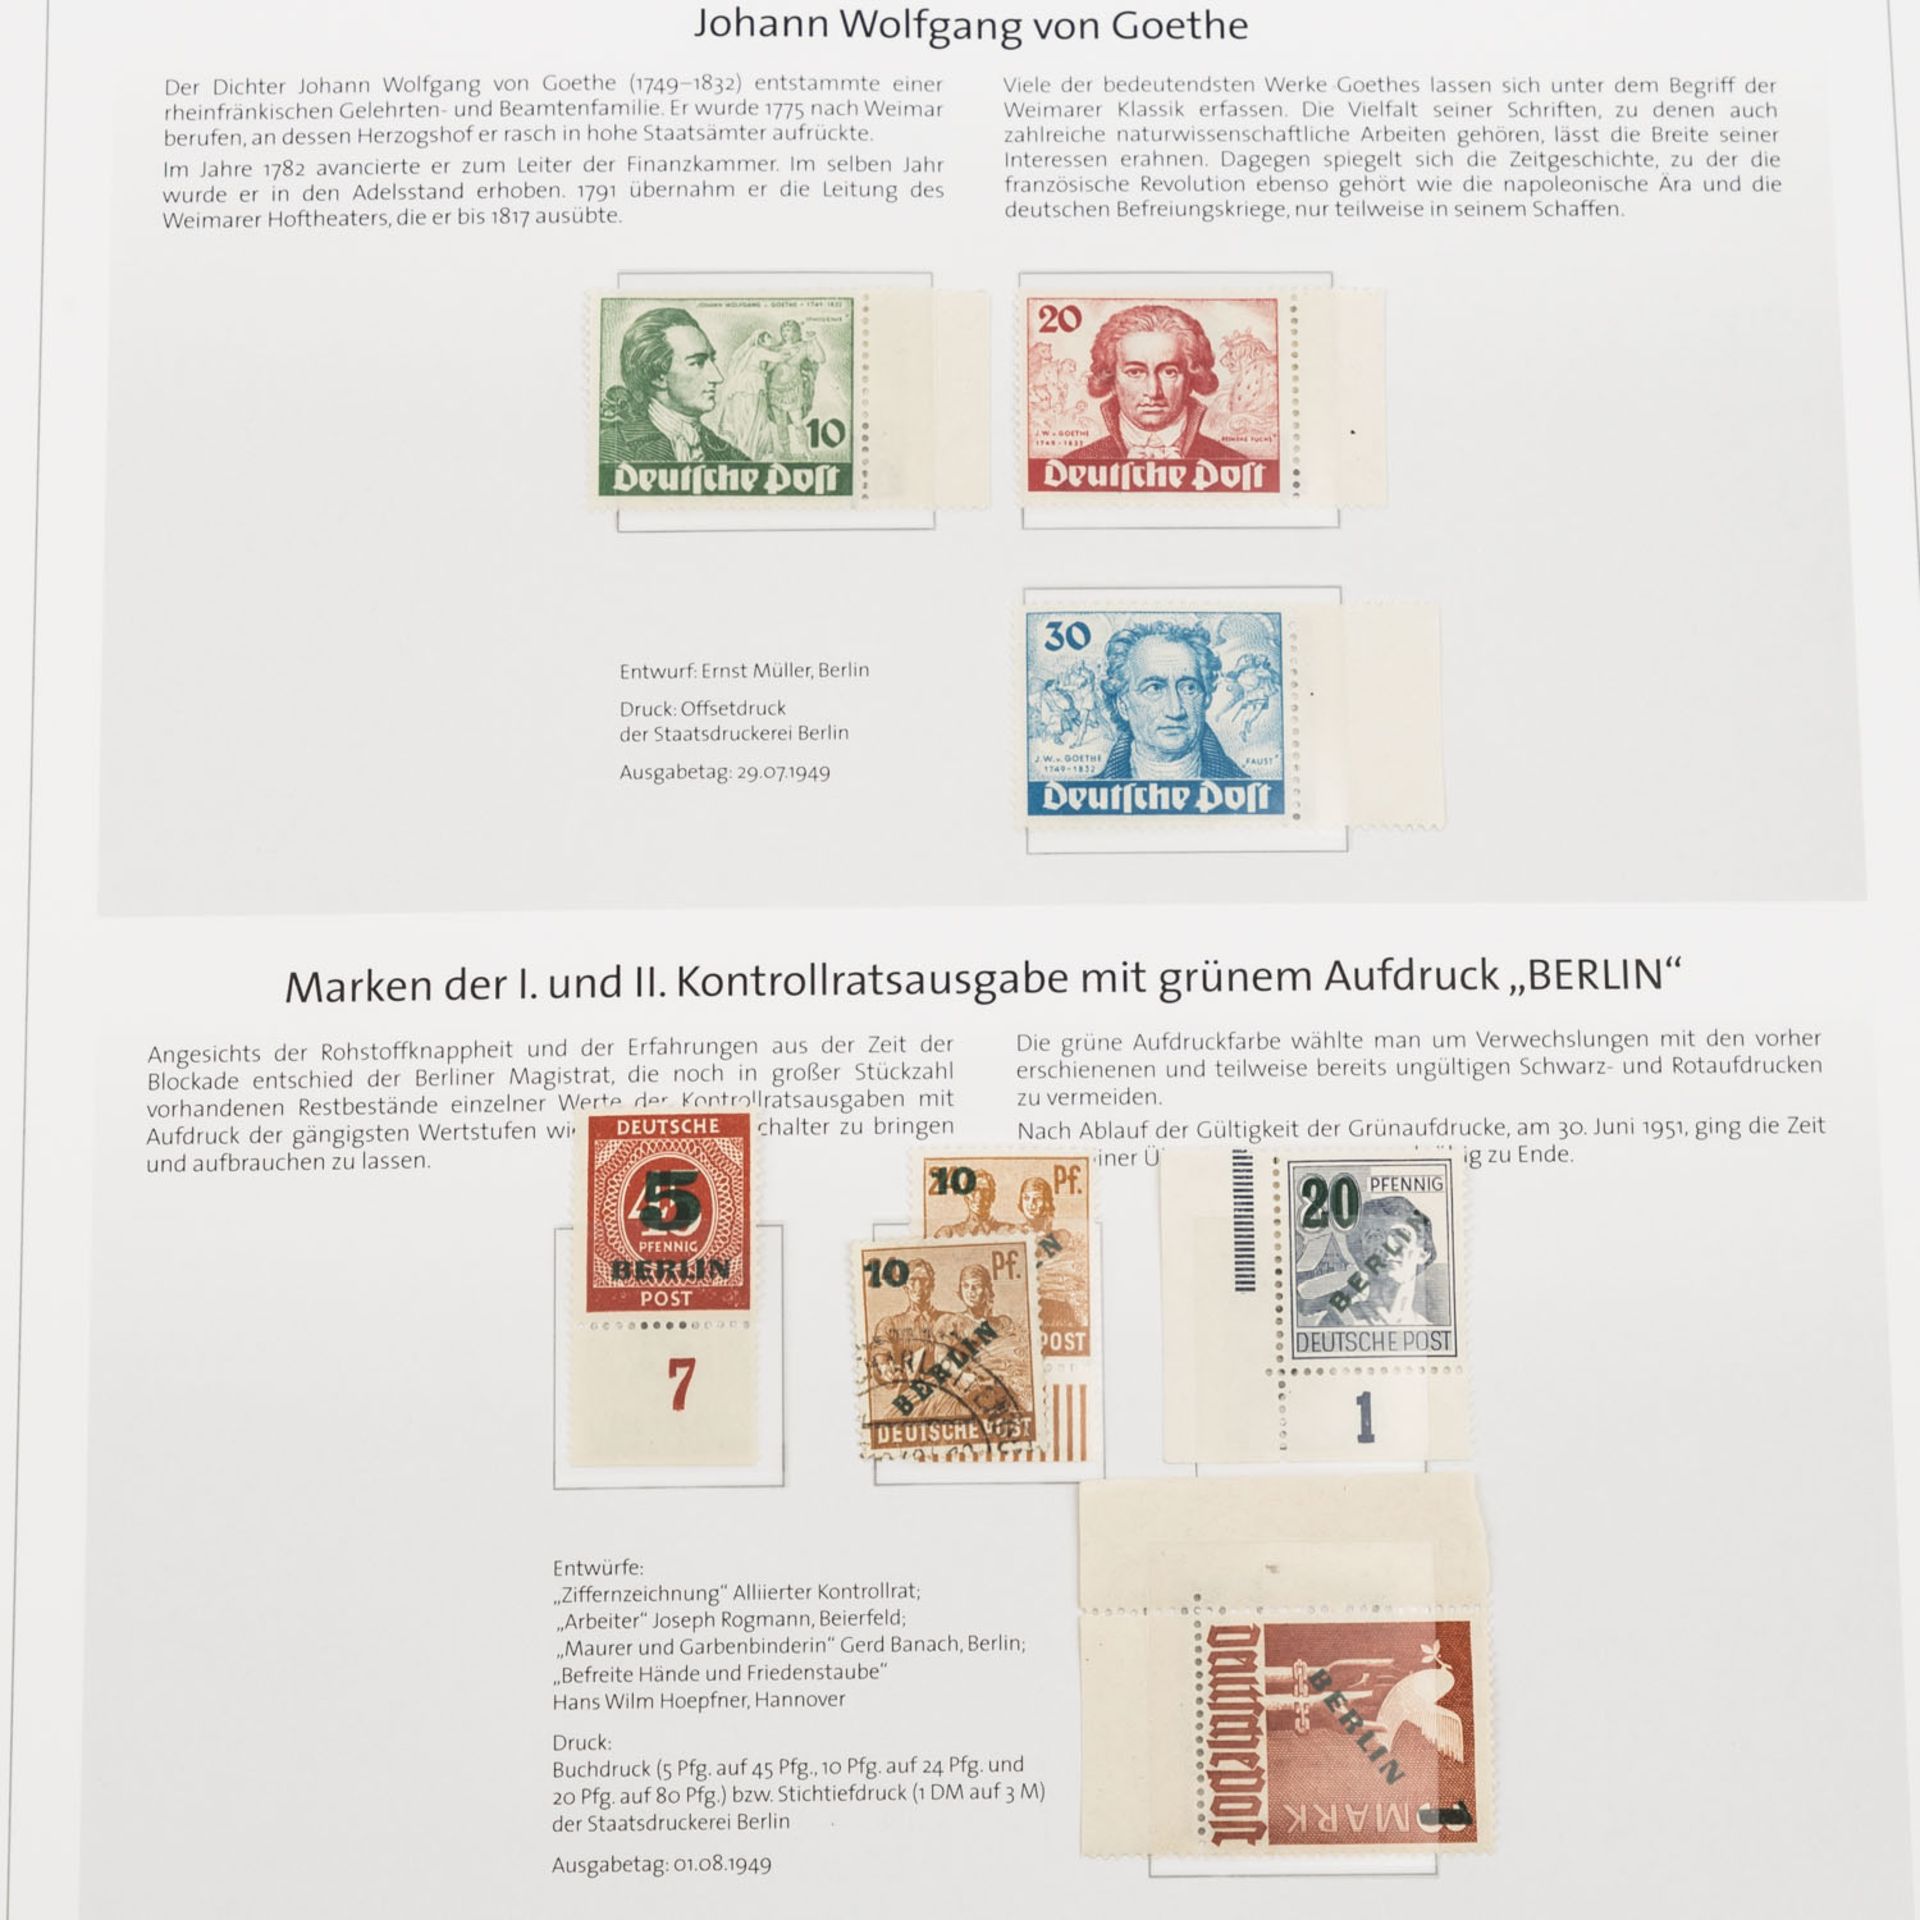 Berlin - Sehr saubere Sammlung im Deutschland-Klassik-Album,Sammlung geht von 1948 bis ca. 1971. - Bild 5 aus 8